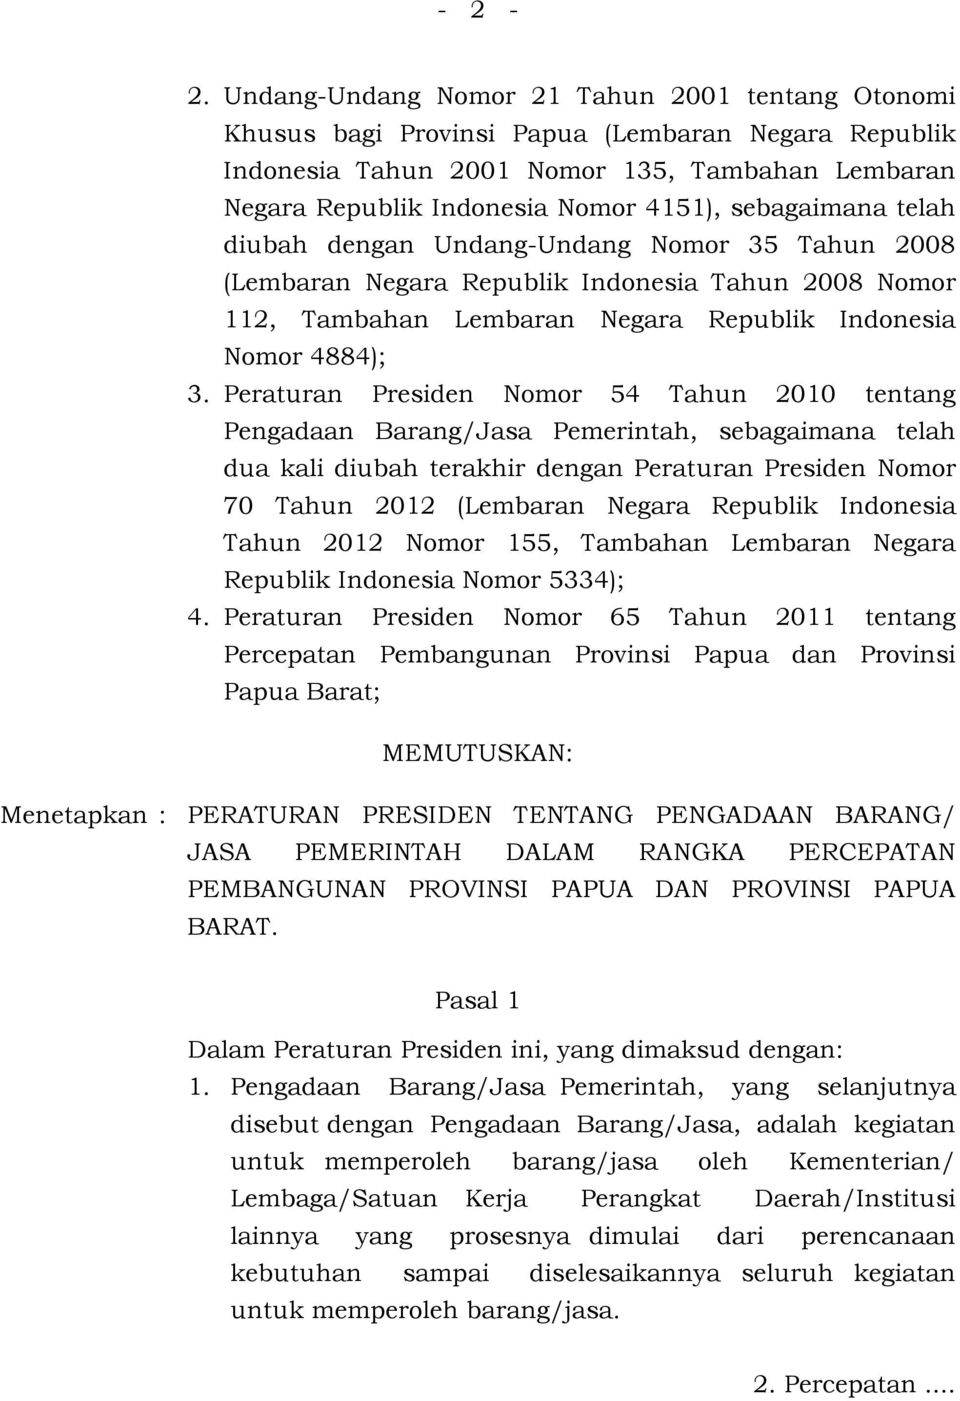 sebagaimana telah diubah dengan Undang-Undang Nomor 35 Tahun 2008 (Lembaran Negara Republik Indonesia Tahun 2008 Nomor 112, Tambahan Lembaran Negara Republik Indonesia Nomor 4884); 3.